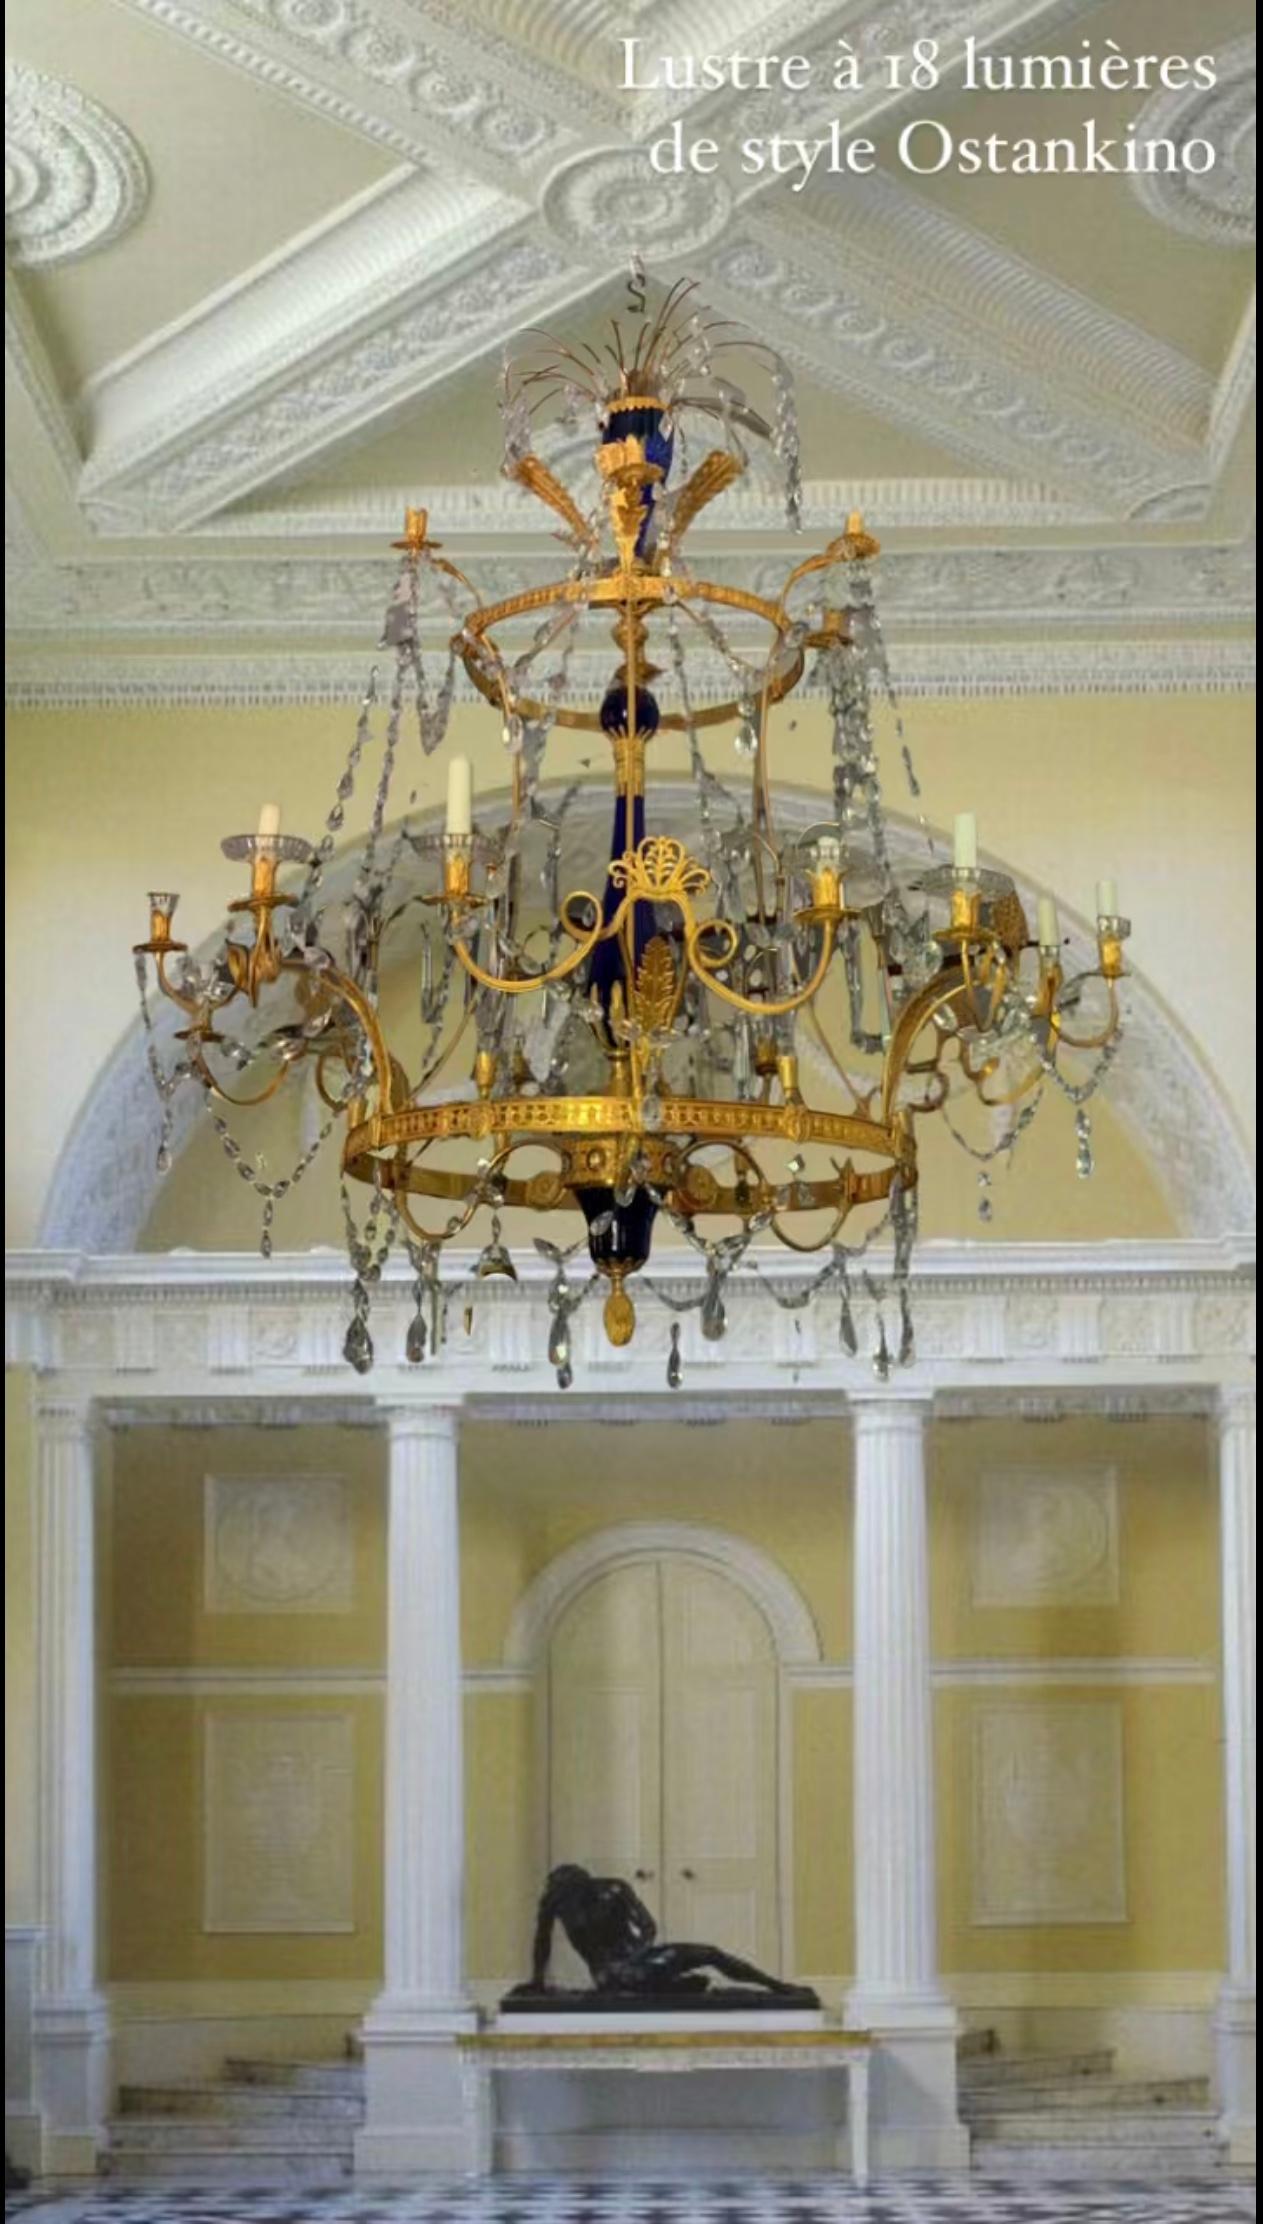 Eines der elegantesten Beispiele für einen großen Palastkronleuchter im baltischen Stil. Die Kristallbrunnen harmonieren mit den feuervergoldeten Bronzeblättern und den anmutigen kobaltblauen Vasen in der Mitte. 
Zwei Reihen von Lichtern für 18